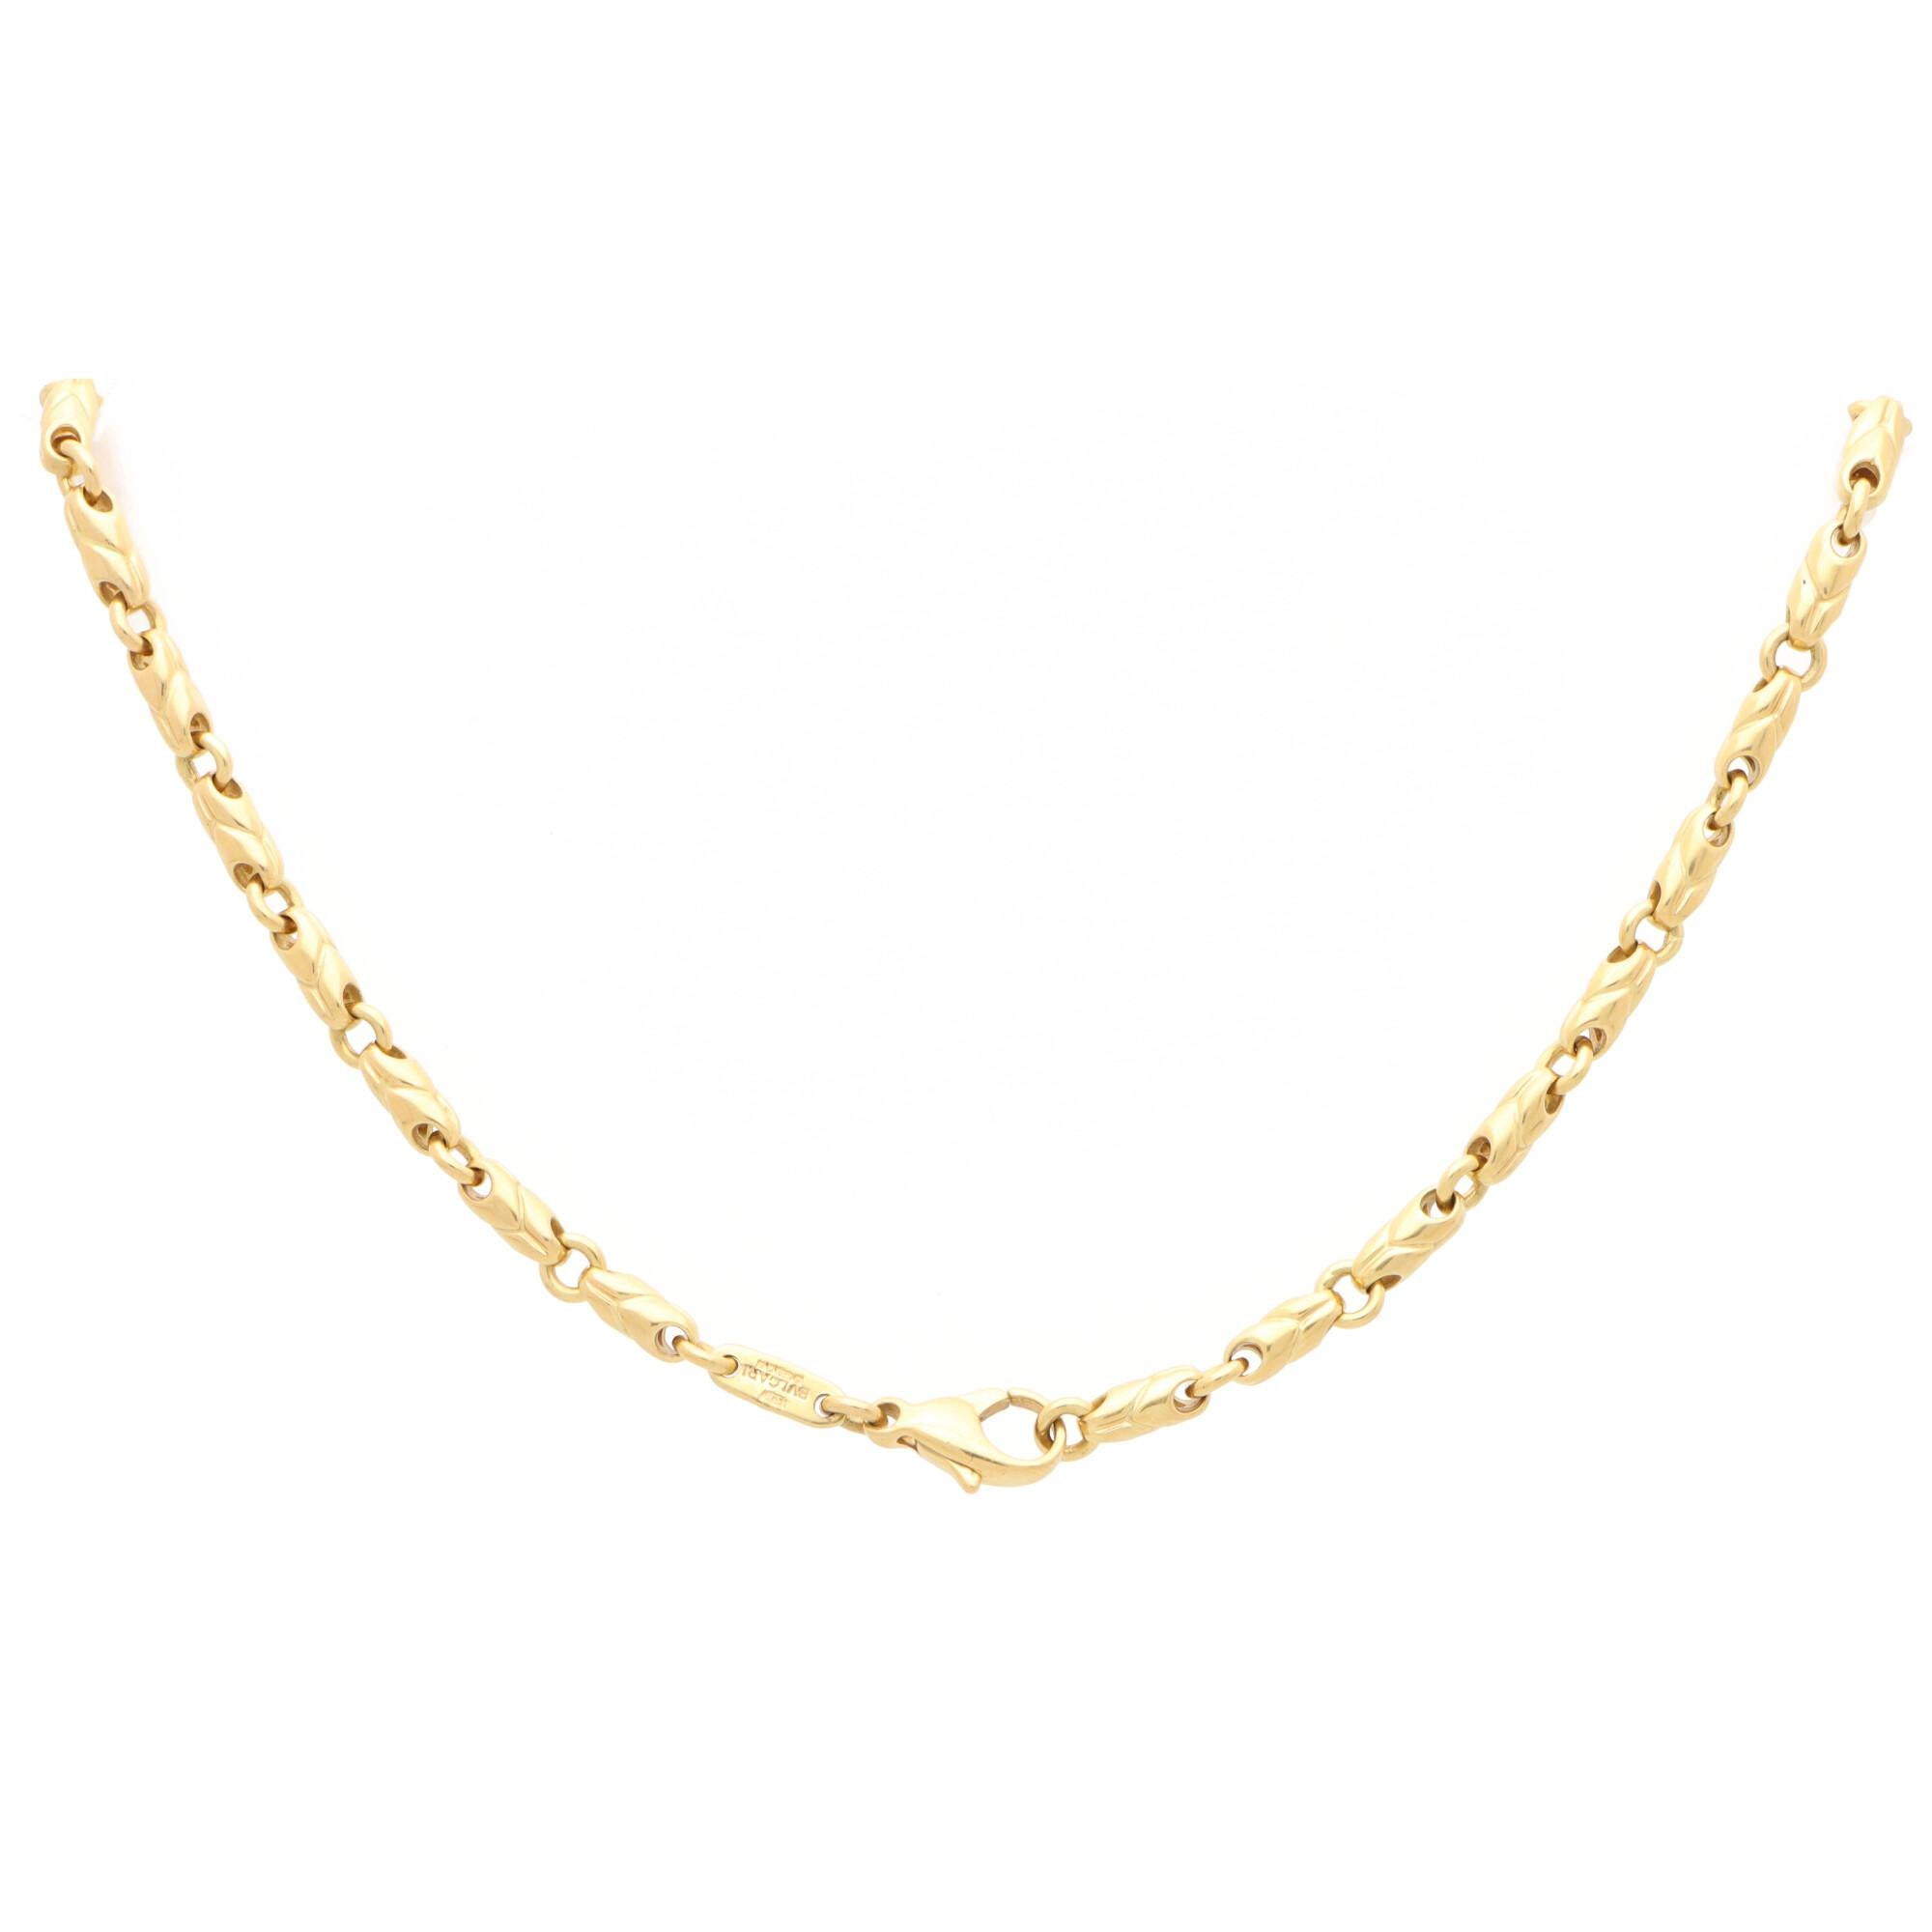 50cm chain necklace